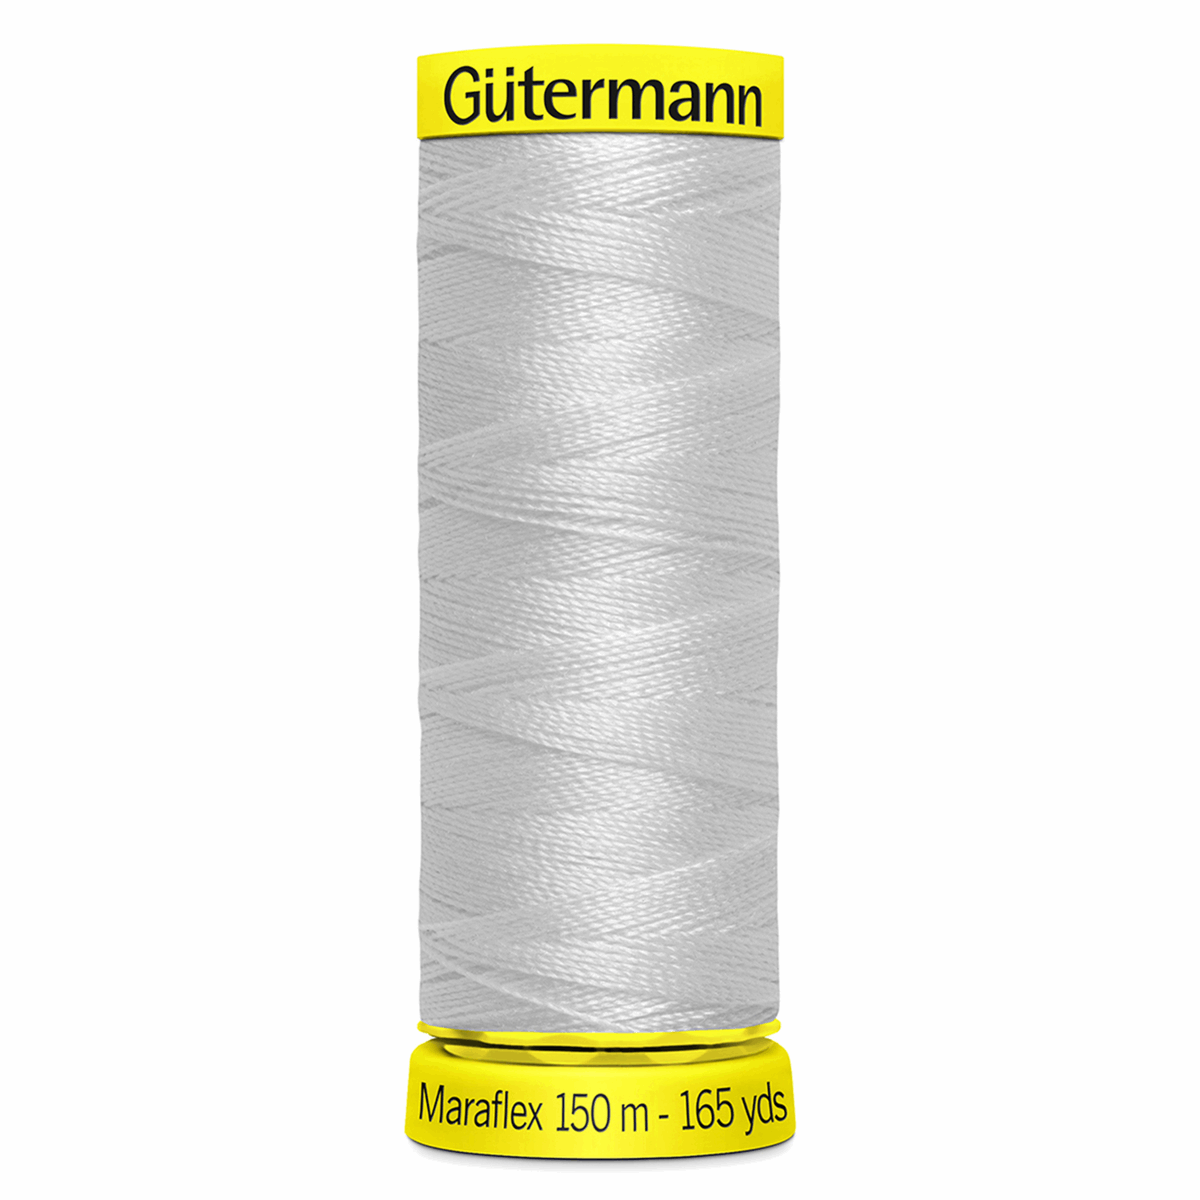 Gutermann Maraflex Elastic Sewing Thread 150m Light Grey 8